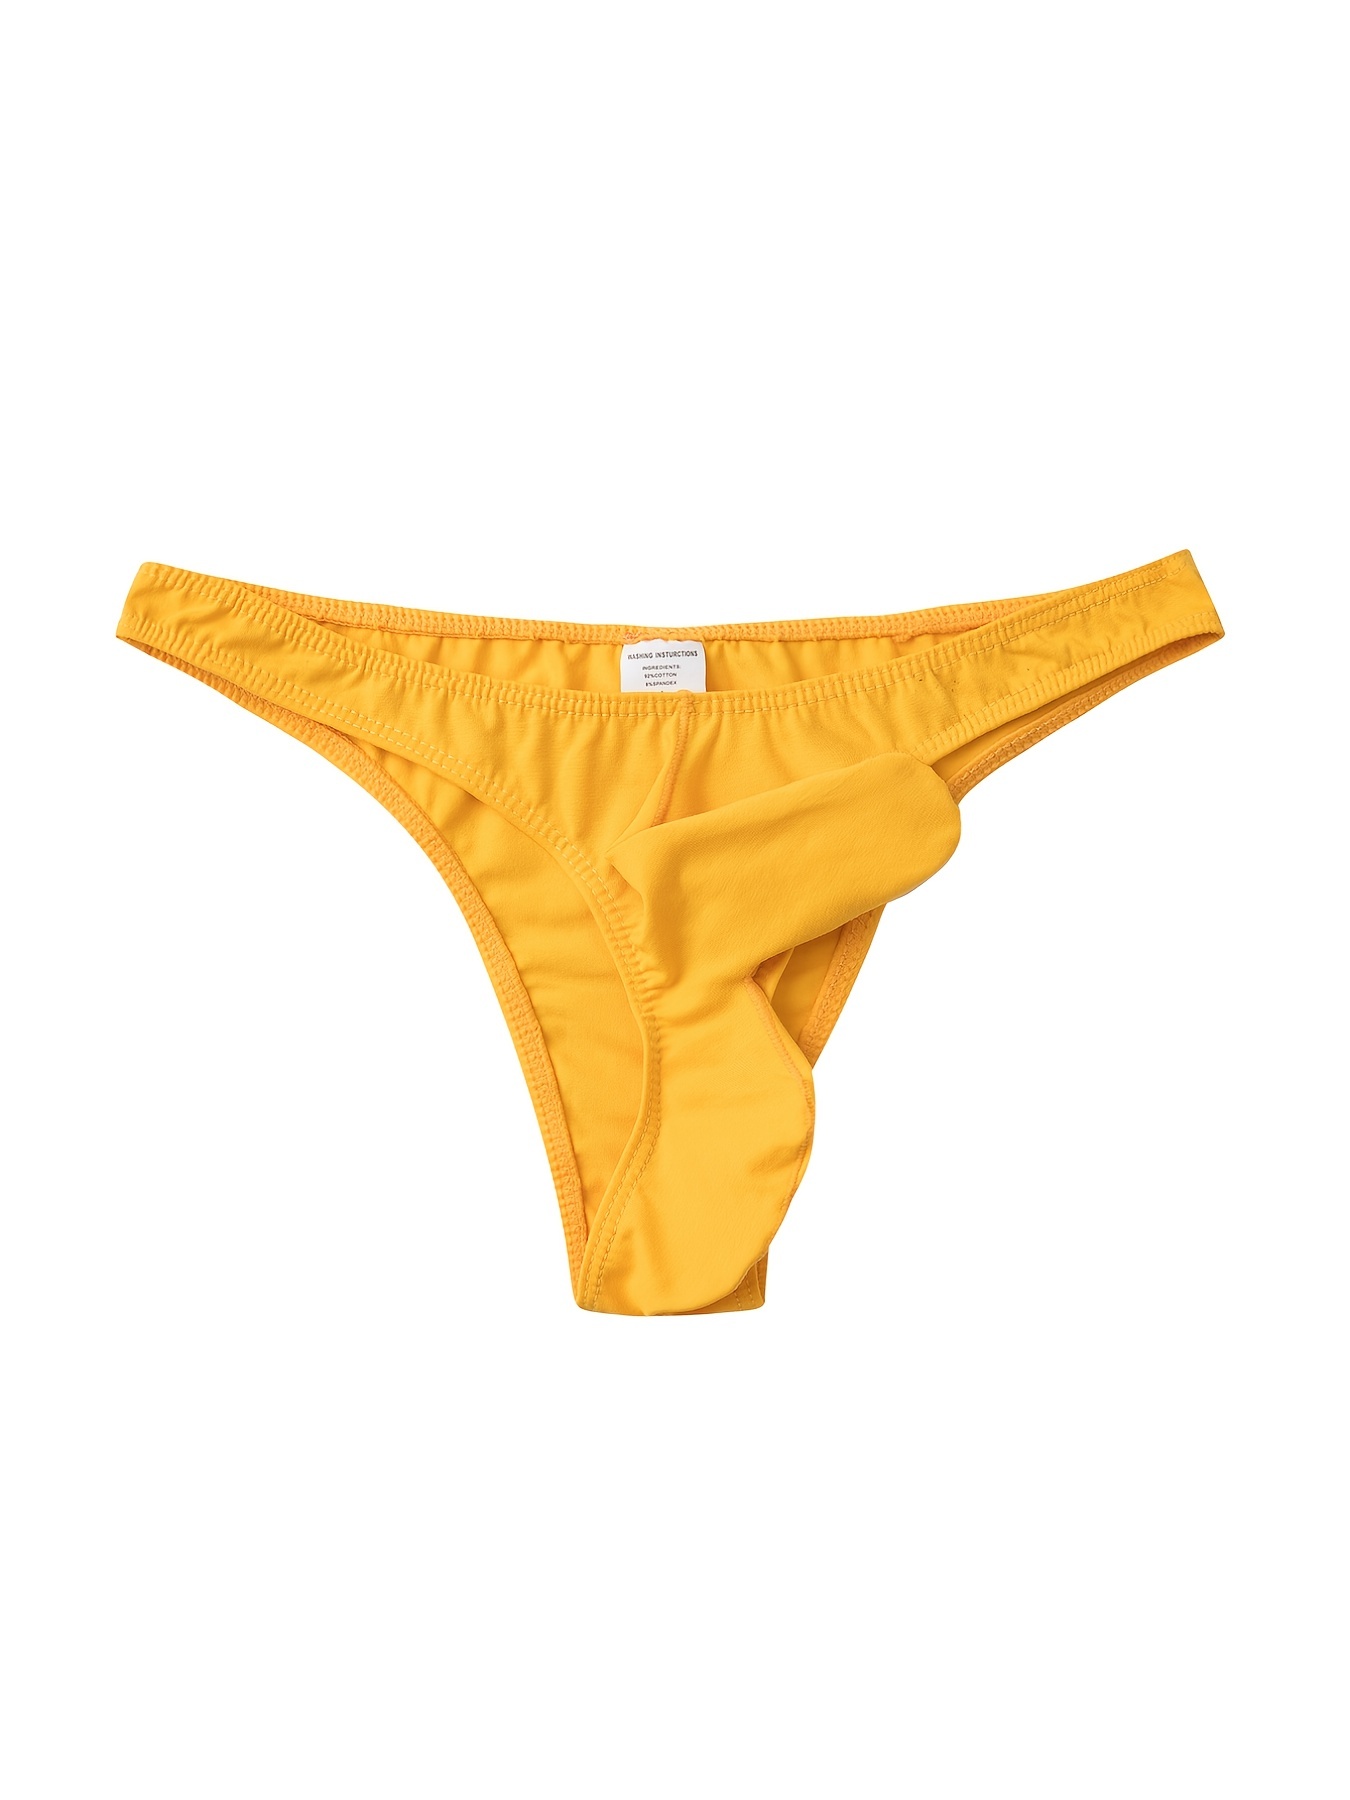 Pjtewawe Mens Underwear Low Waist Pocket Thong Multi Color